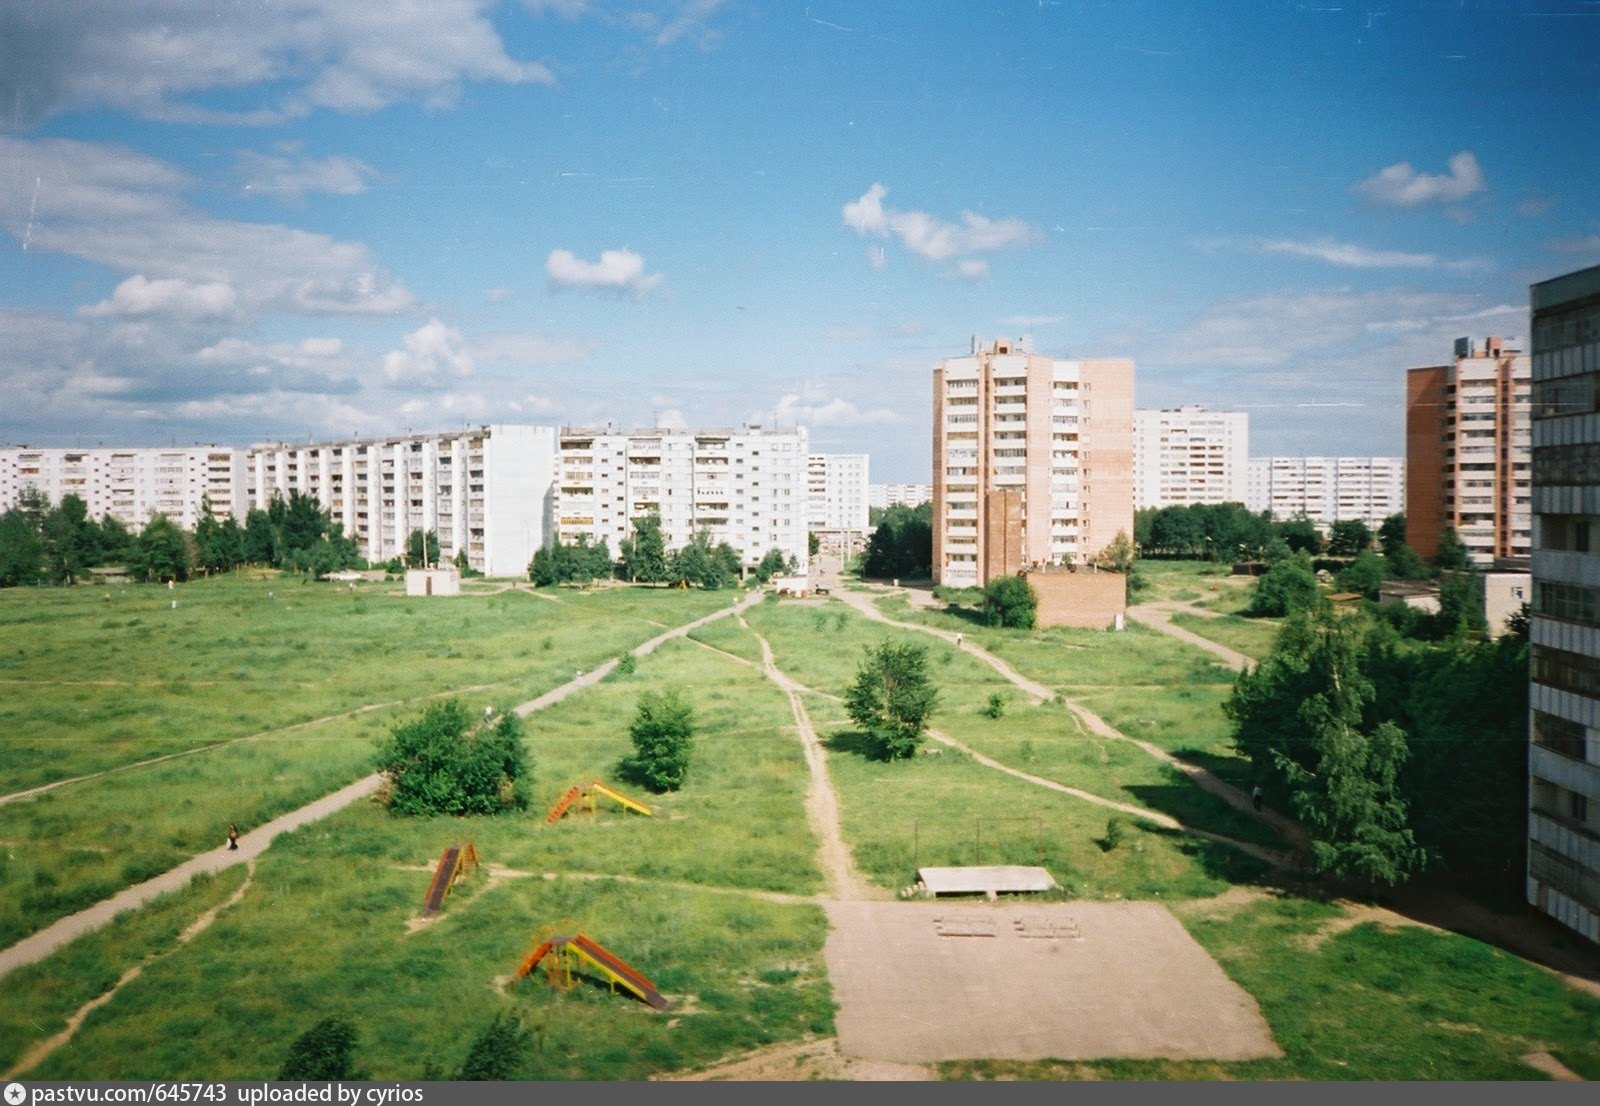 Микрорайон 11 б. 11 Микрорайон. Микрорайон зеленый в 1995 году. Казань 1997 год фото. Коньково 2 микрорайон фото.